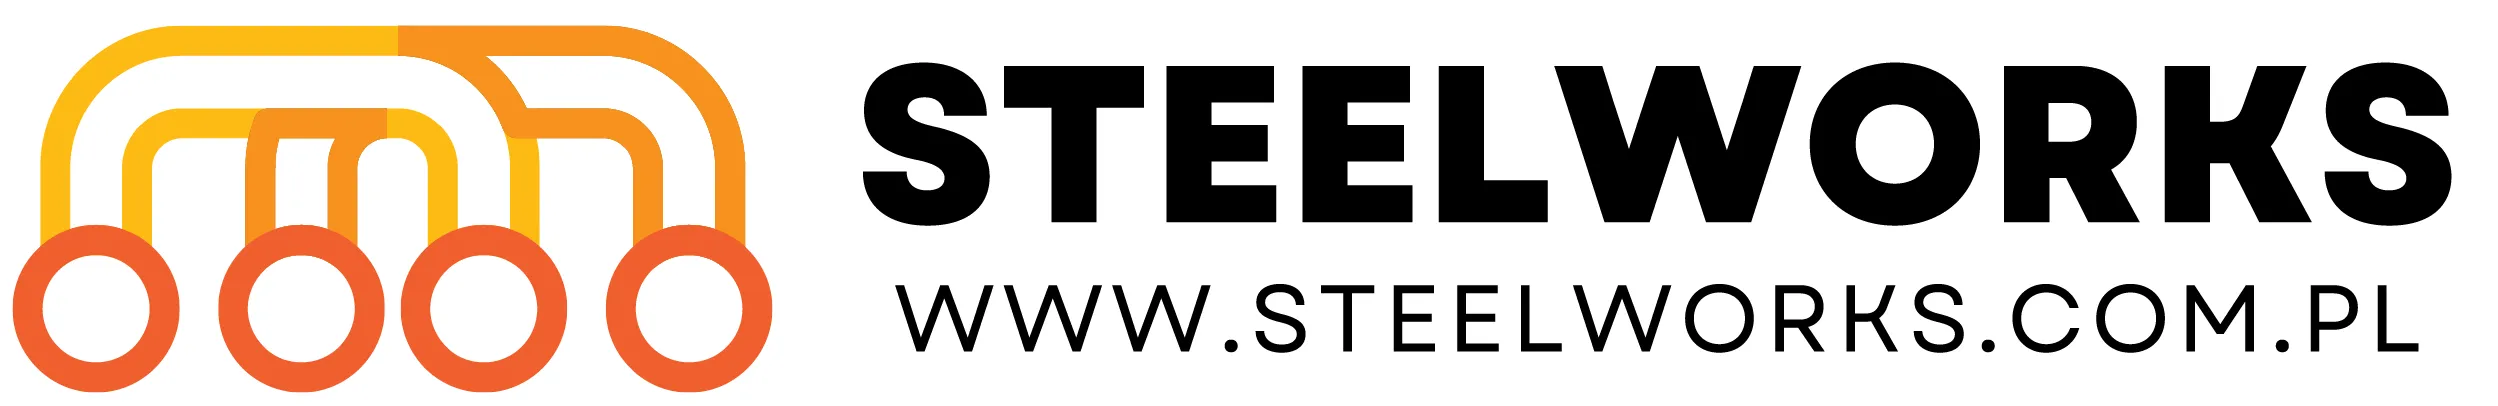  Steelworks.com.pl Kody promocyjne